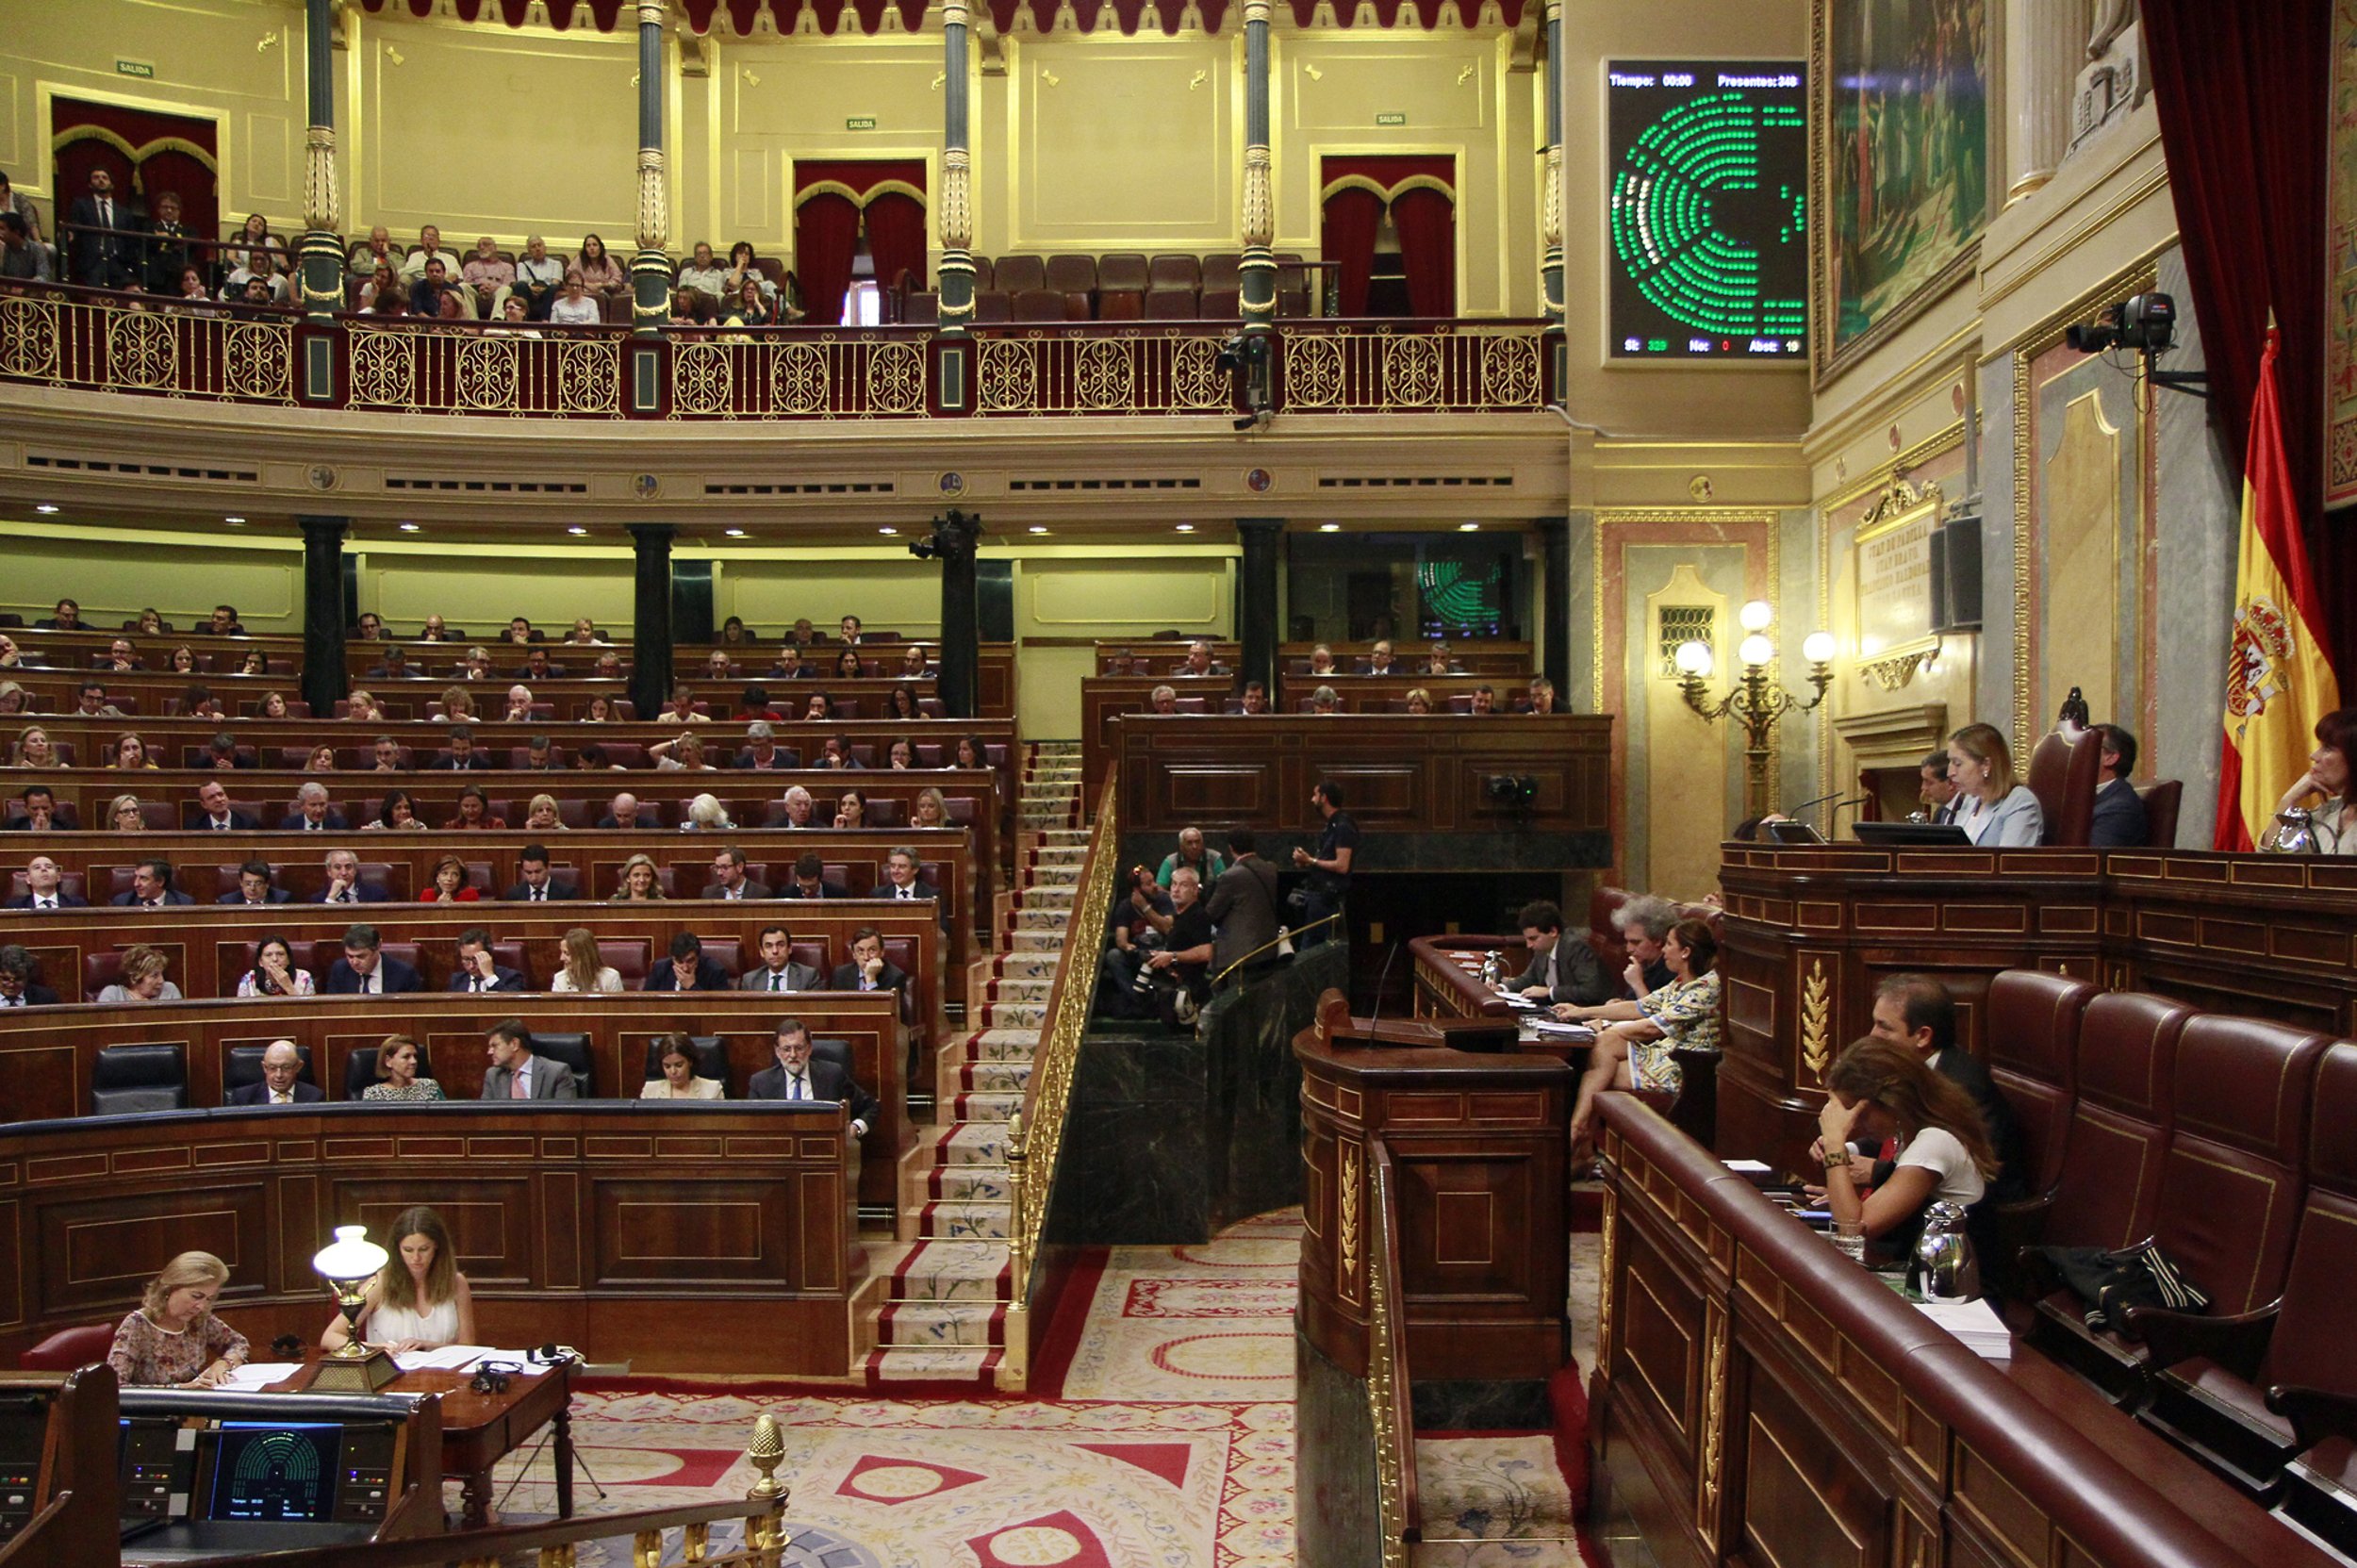 ¿Crees que los diputados catalanes tendrían ahora que abandonar el Congreso?